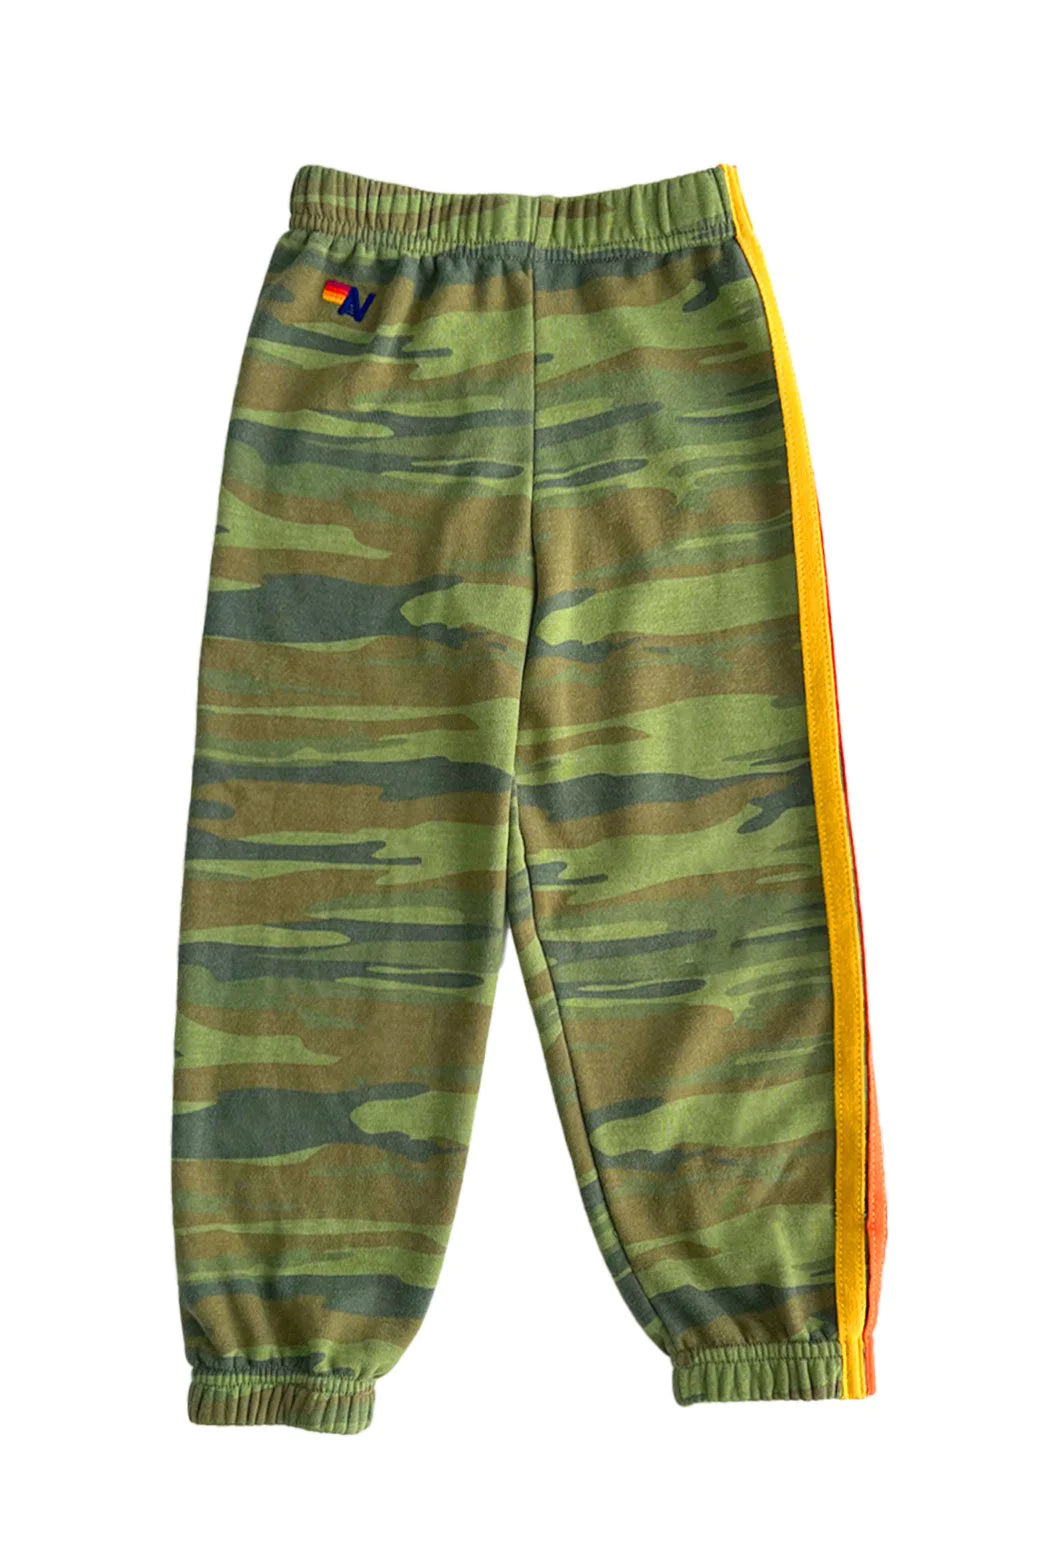 Aviator Nation Kid's 5 Stripe Sweatpants -Camo